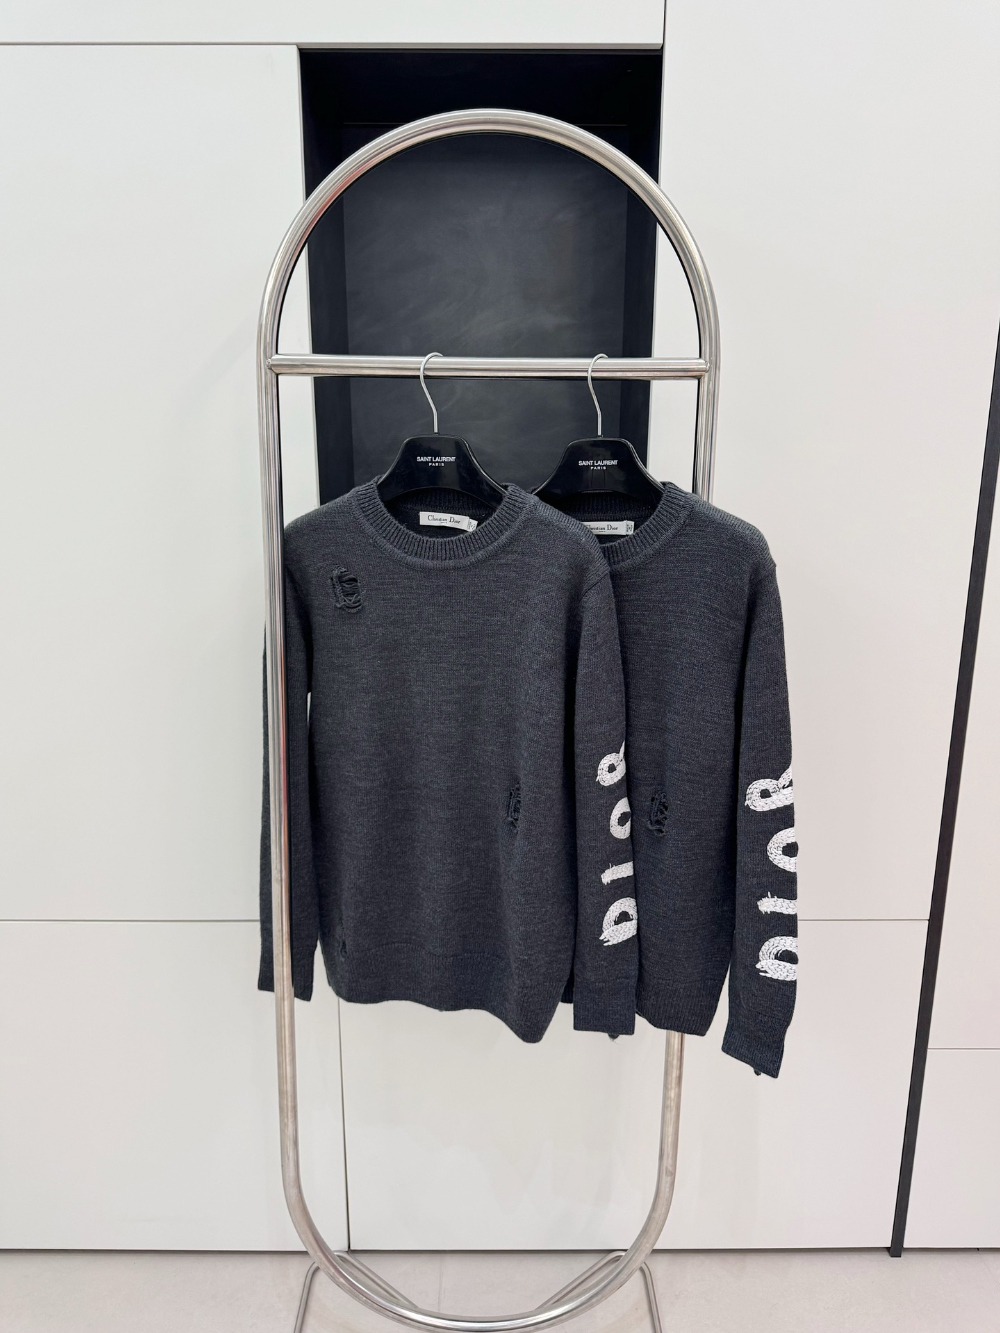 vg-디올-레플리카-울-워크샵-스웨터-매장-130만원대-명품 레플리카 미러 SA급